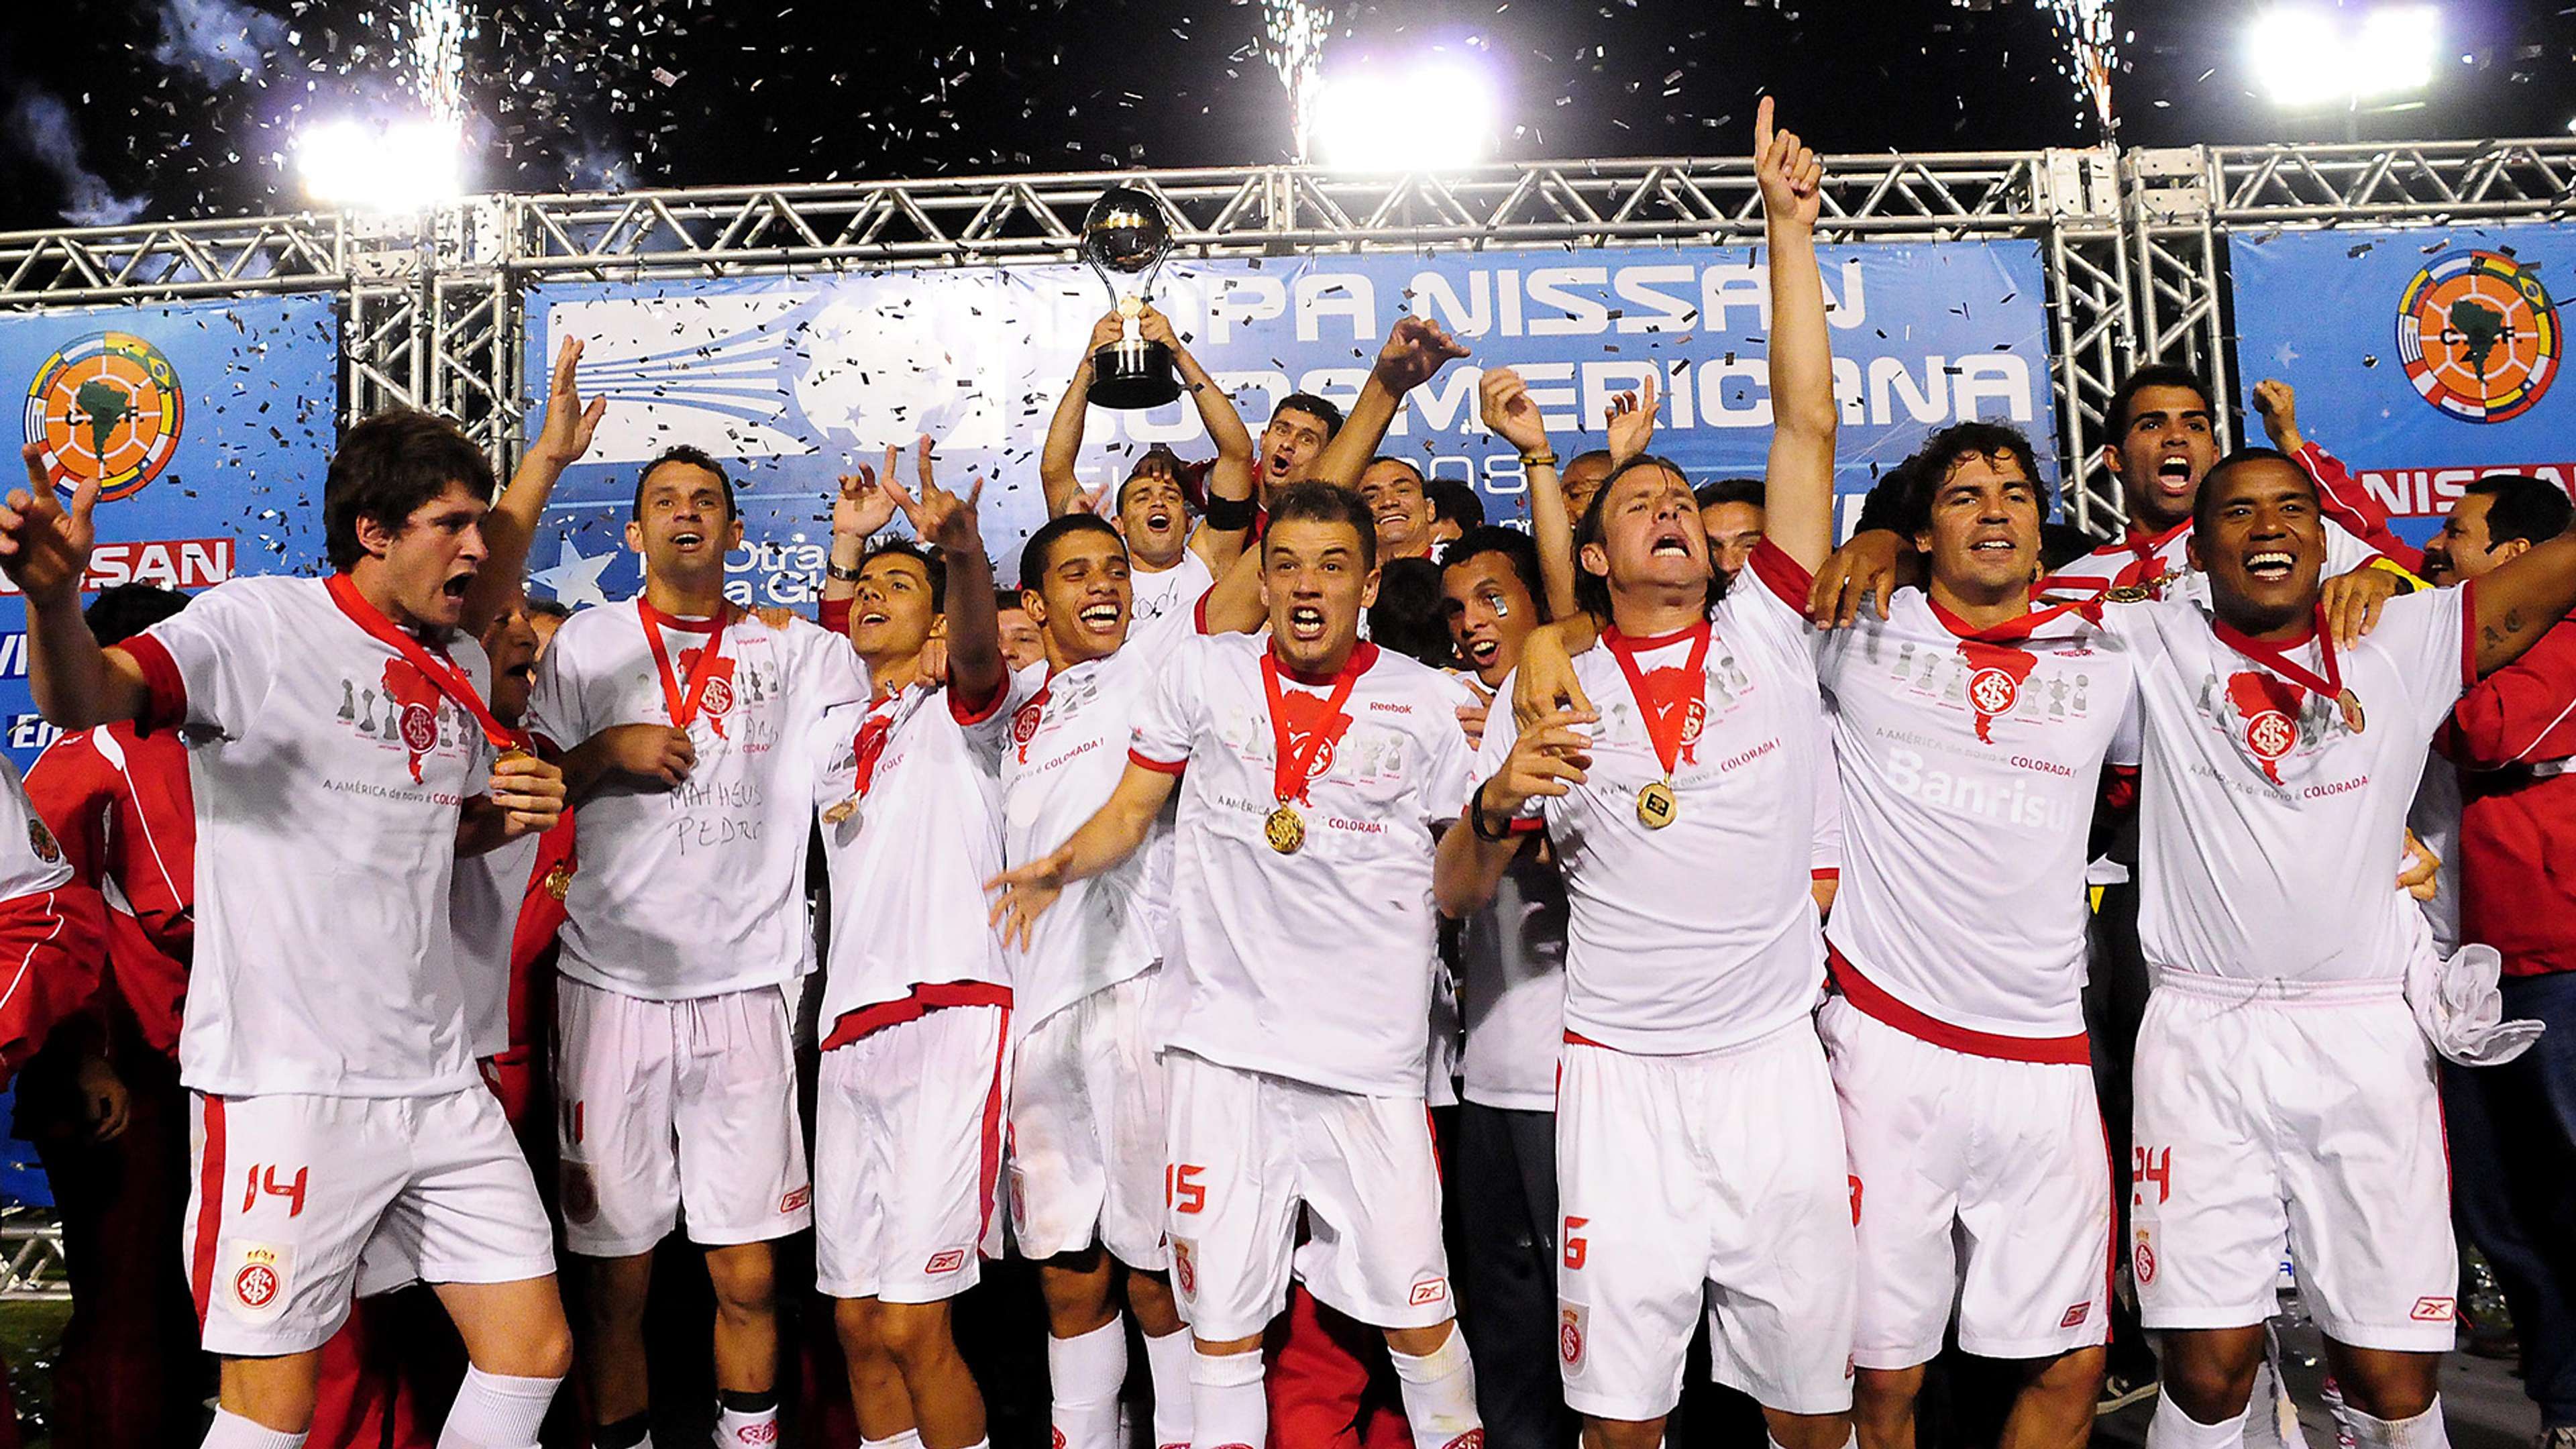 D'alessandro Internacional Campeão Sudamericana 2008